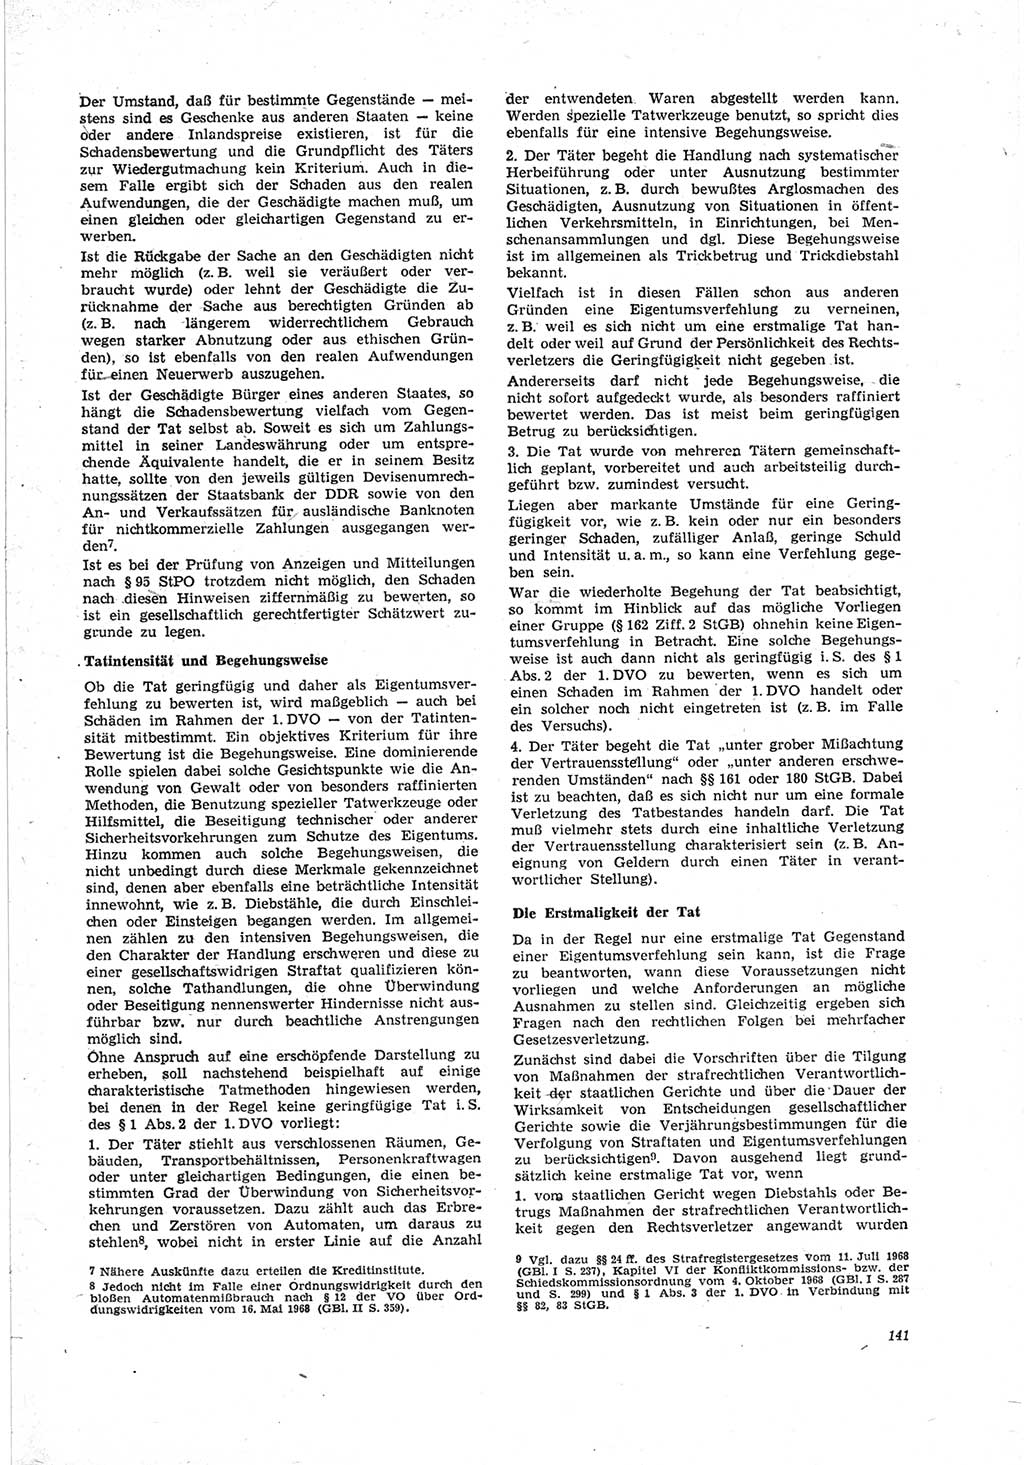 Neue Justiz (NJ), Zeitschrift für Recht und Rechtswissenschaft [Deutsche Demokratische Republik (DDR)], 23. Jahrgang 1969, Seite 141 (NJ DDR 1969, S. 141)